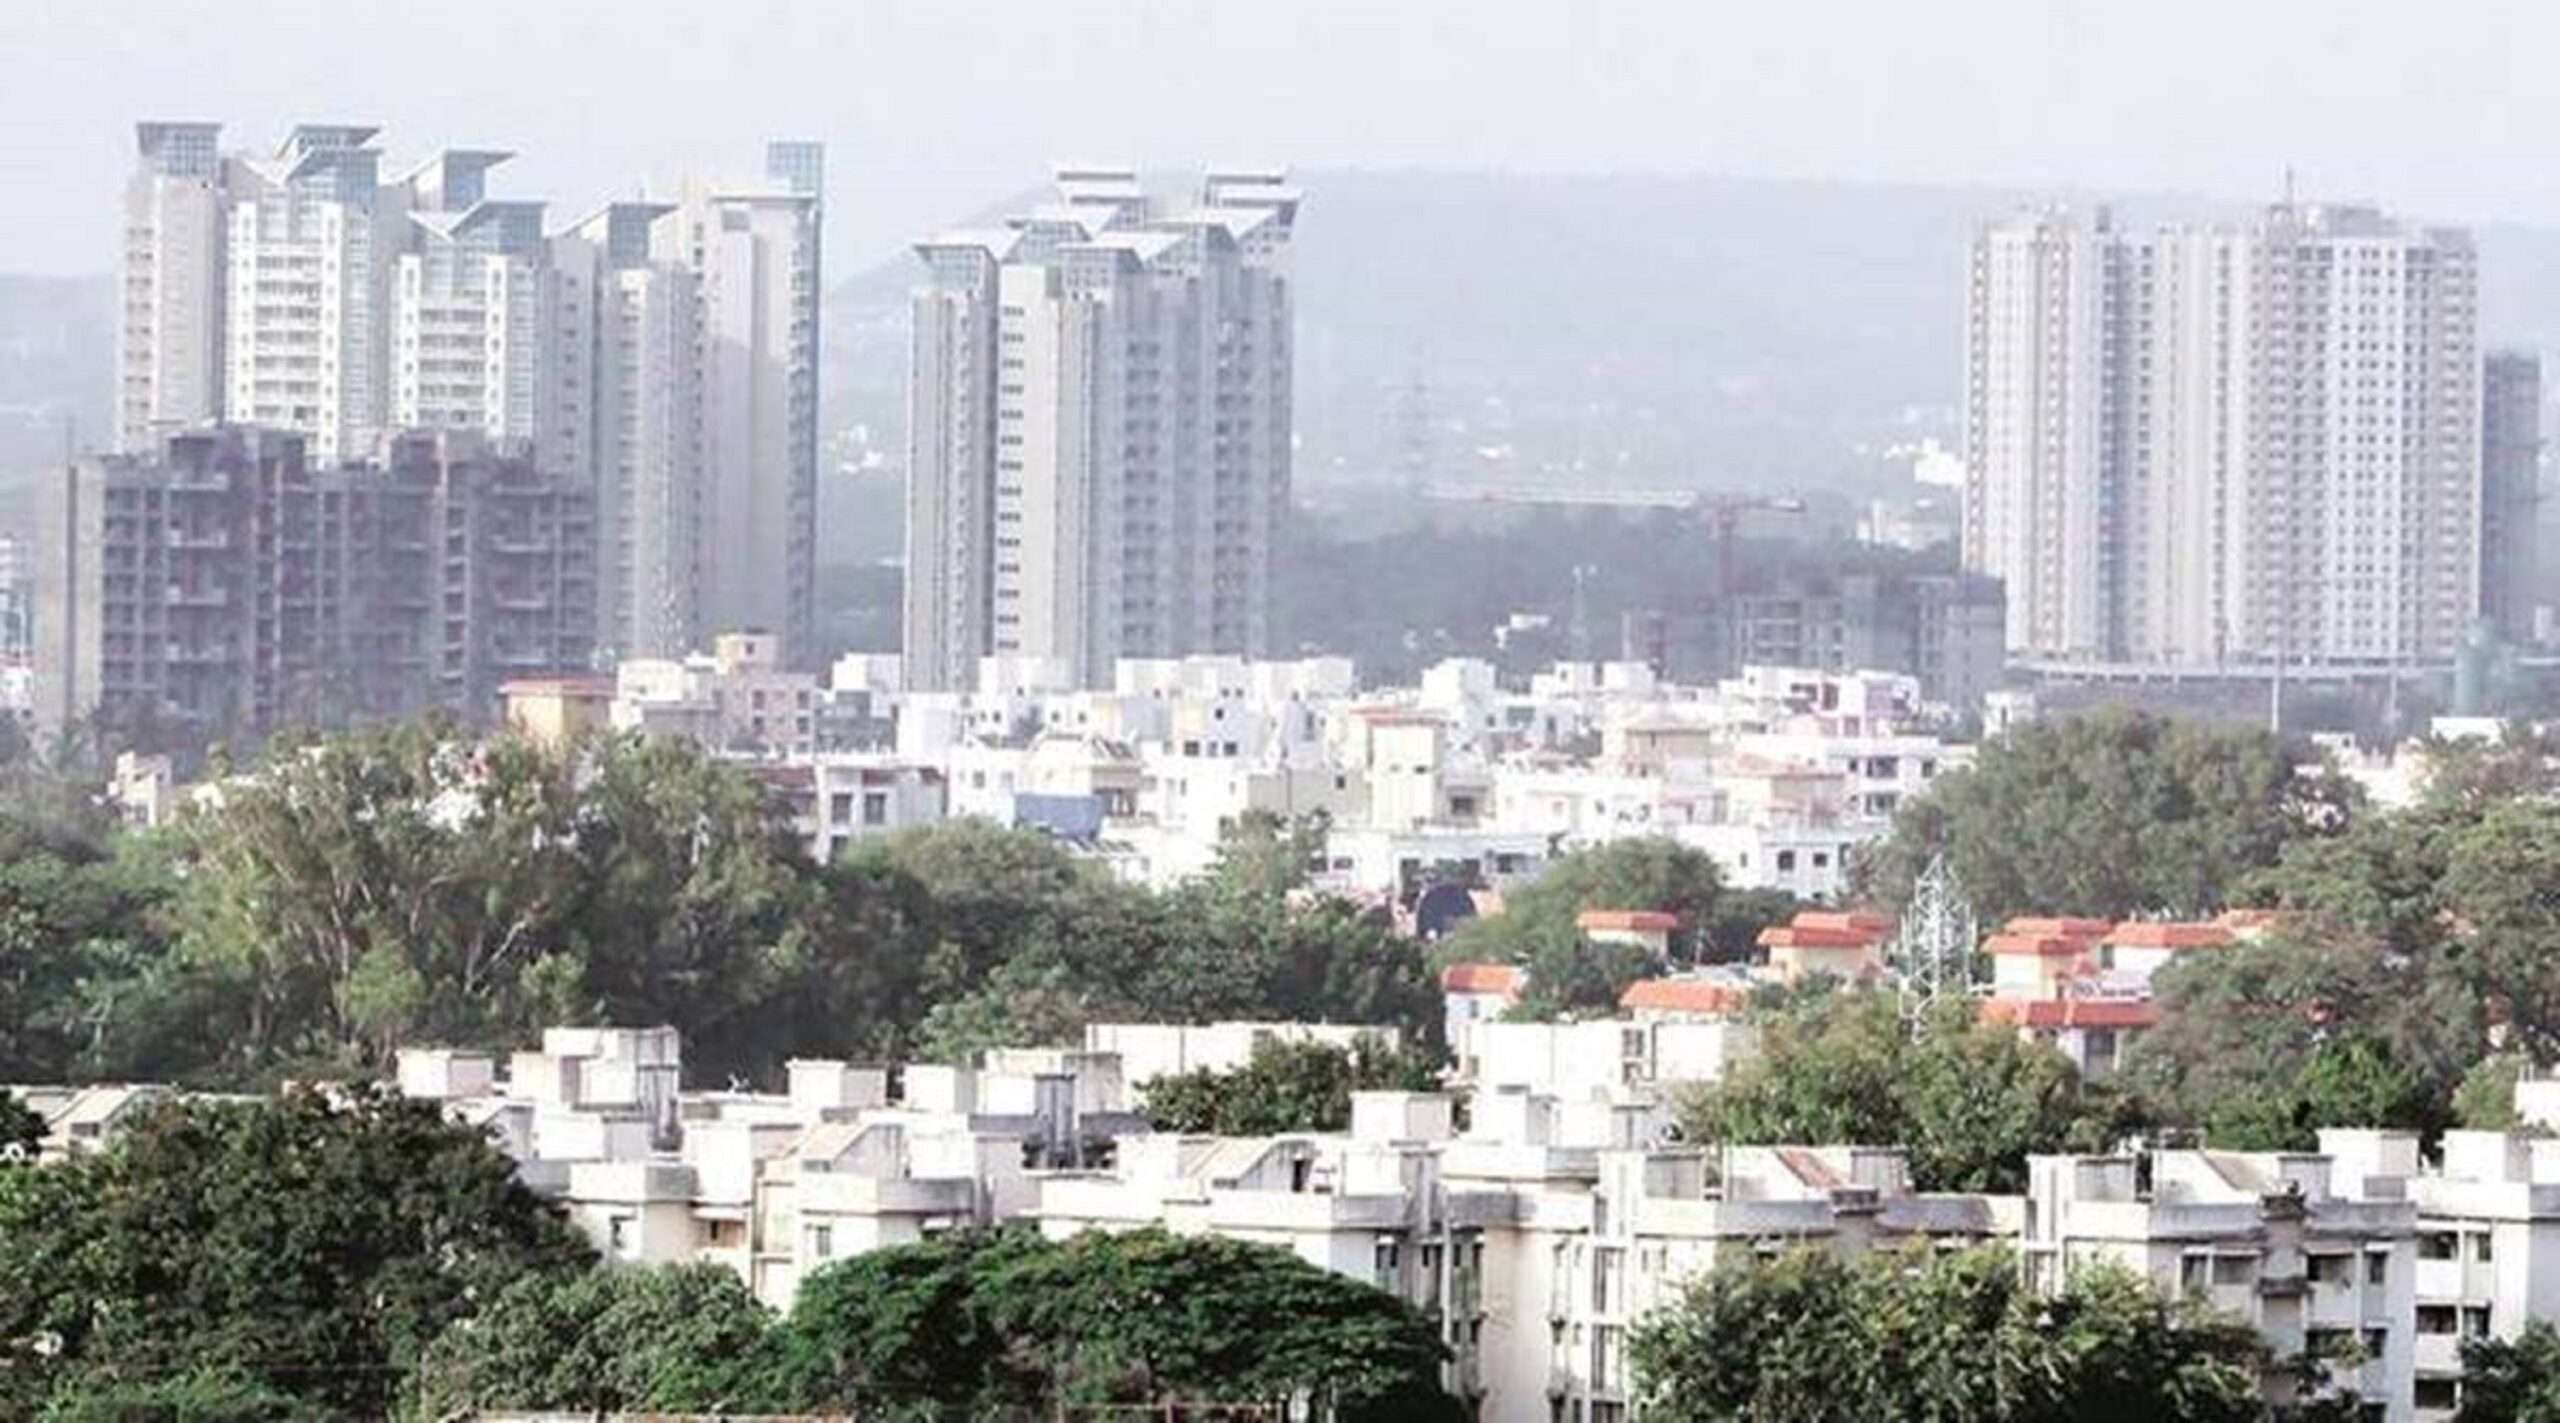 Deen Dayal plots in Gurgaon